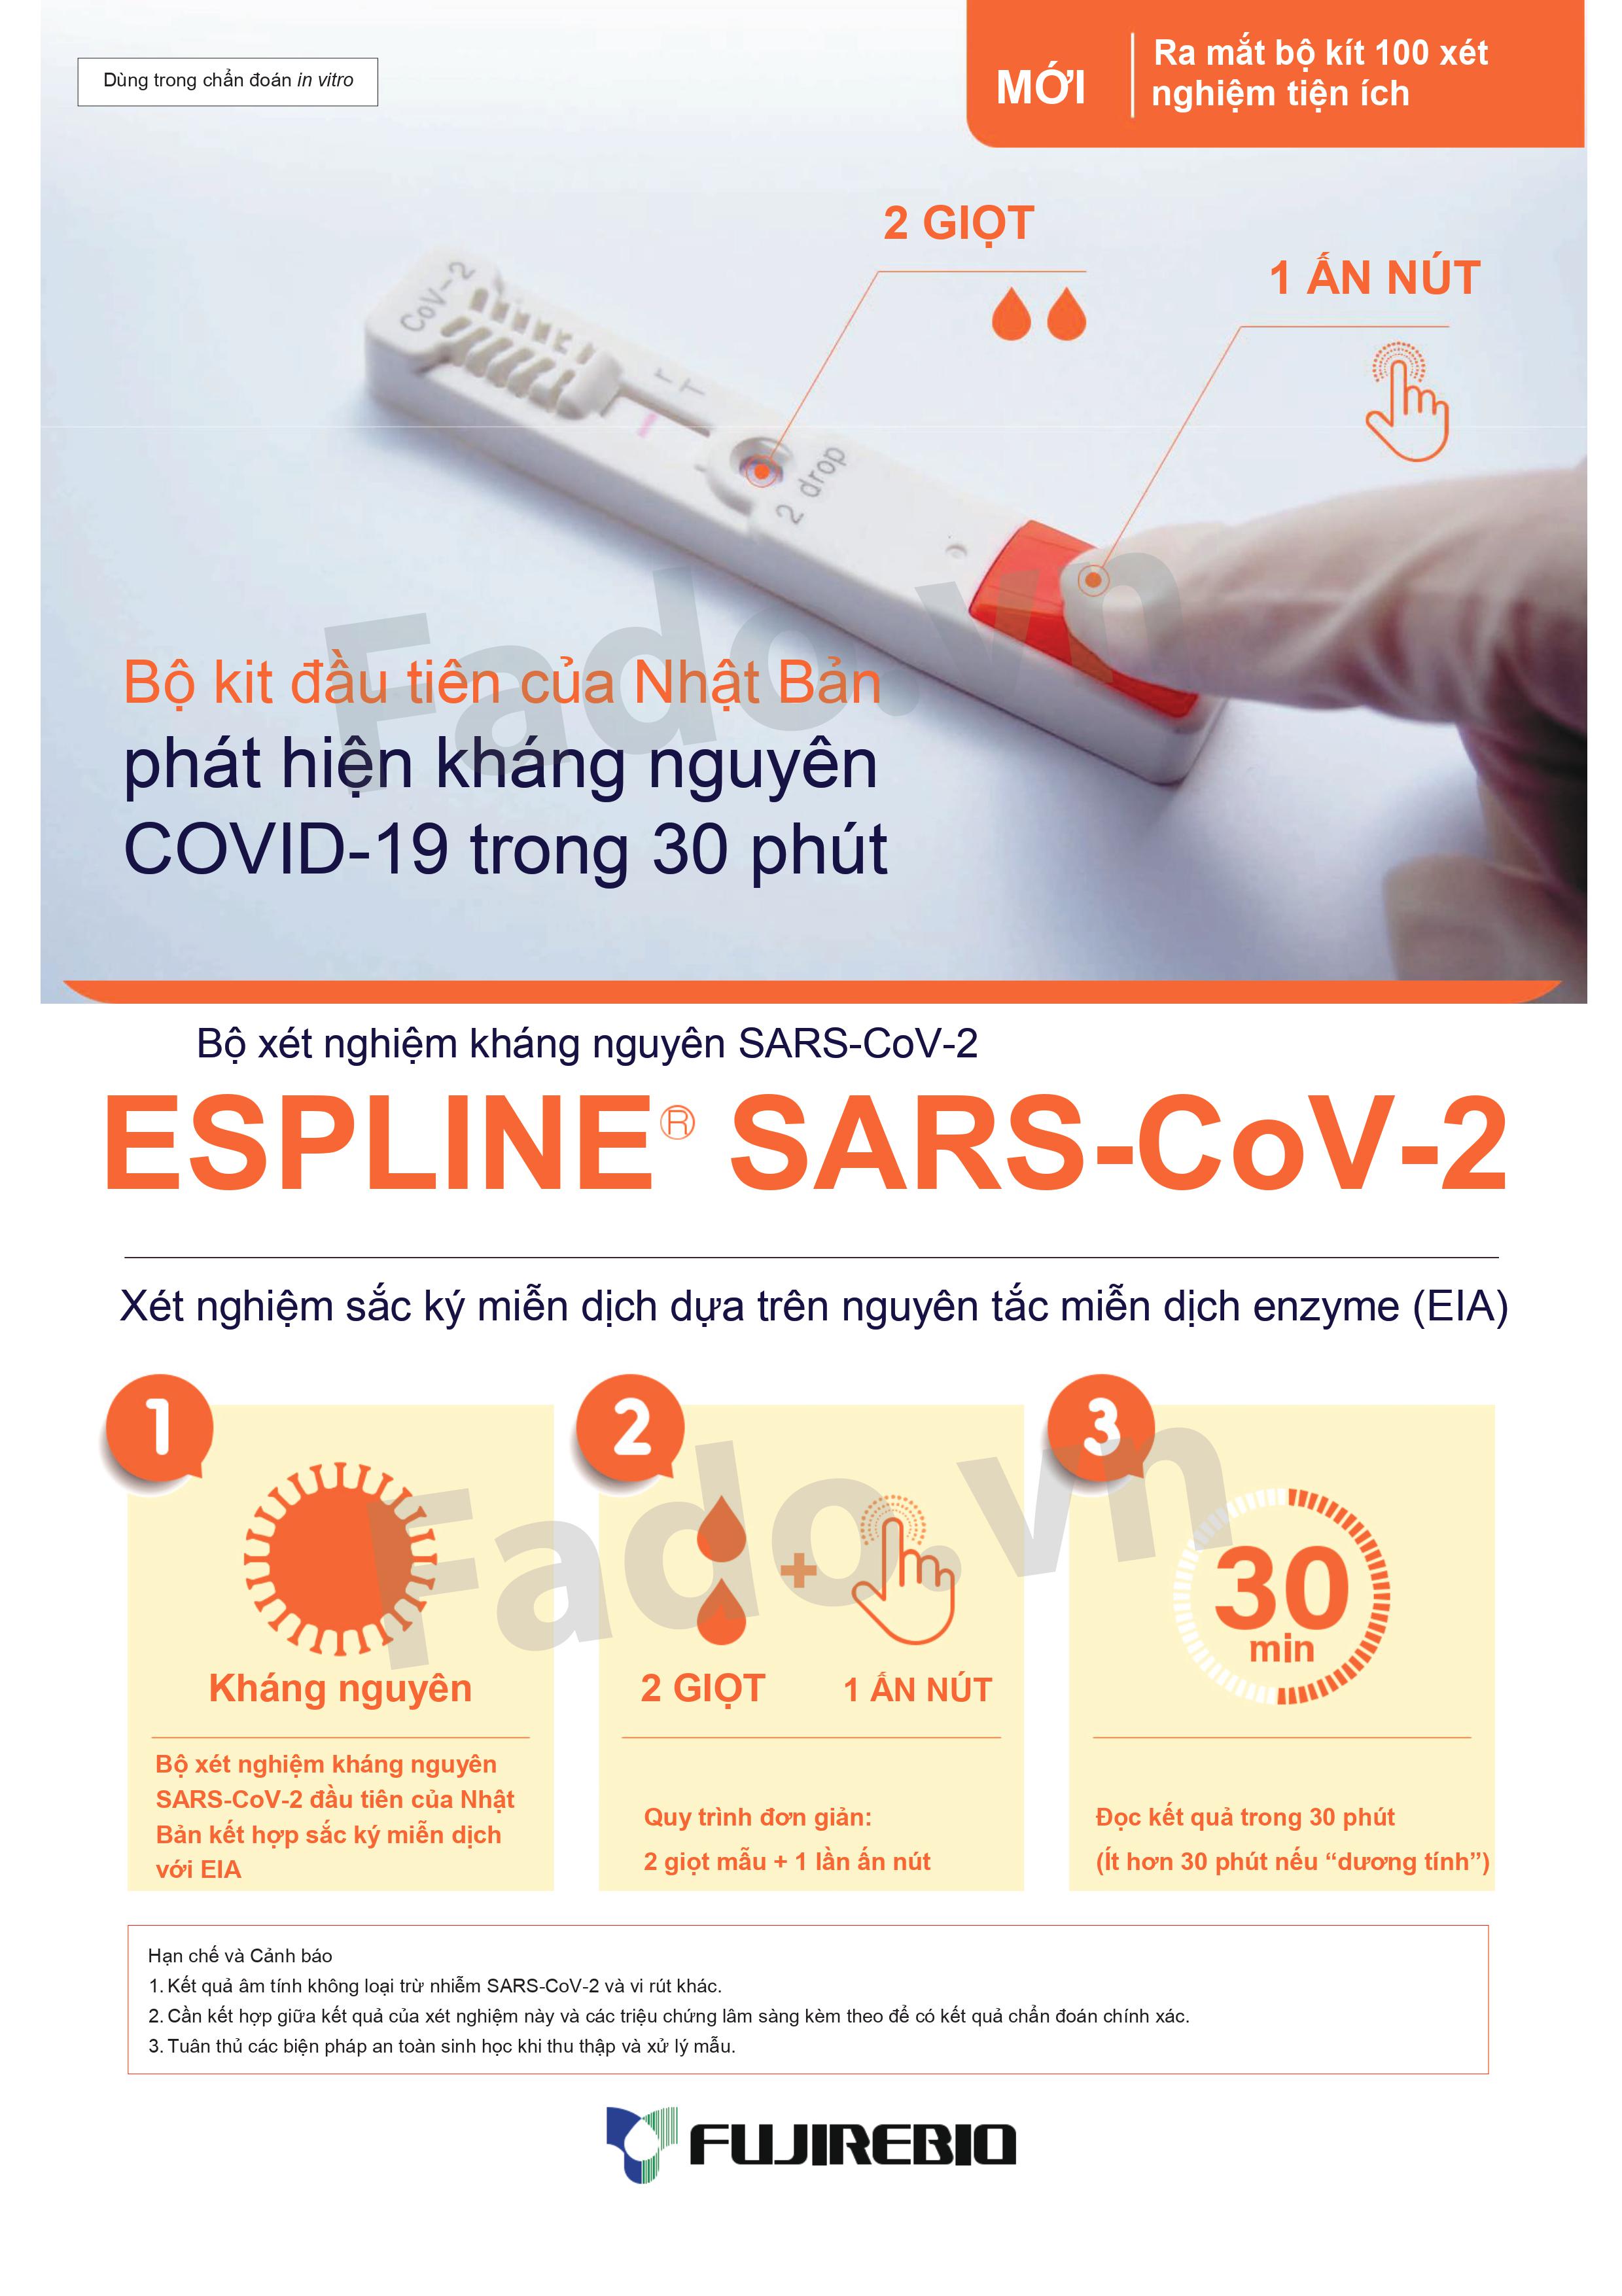 HÀNG CÓ SẴN - Combo 50 - Kit xét nghiệm kháng nguyên ESPLINE SARS-CoV-2 - Dựa trên nguyên tắc miễn dịch enzyme (EIA)